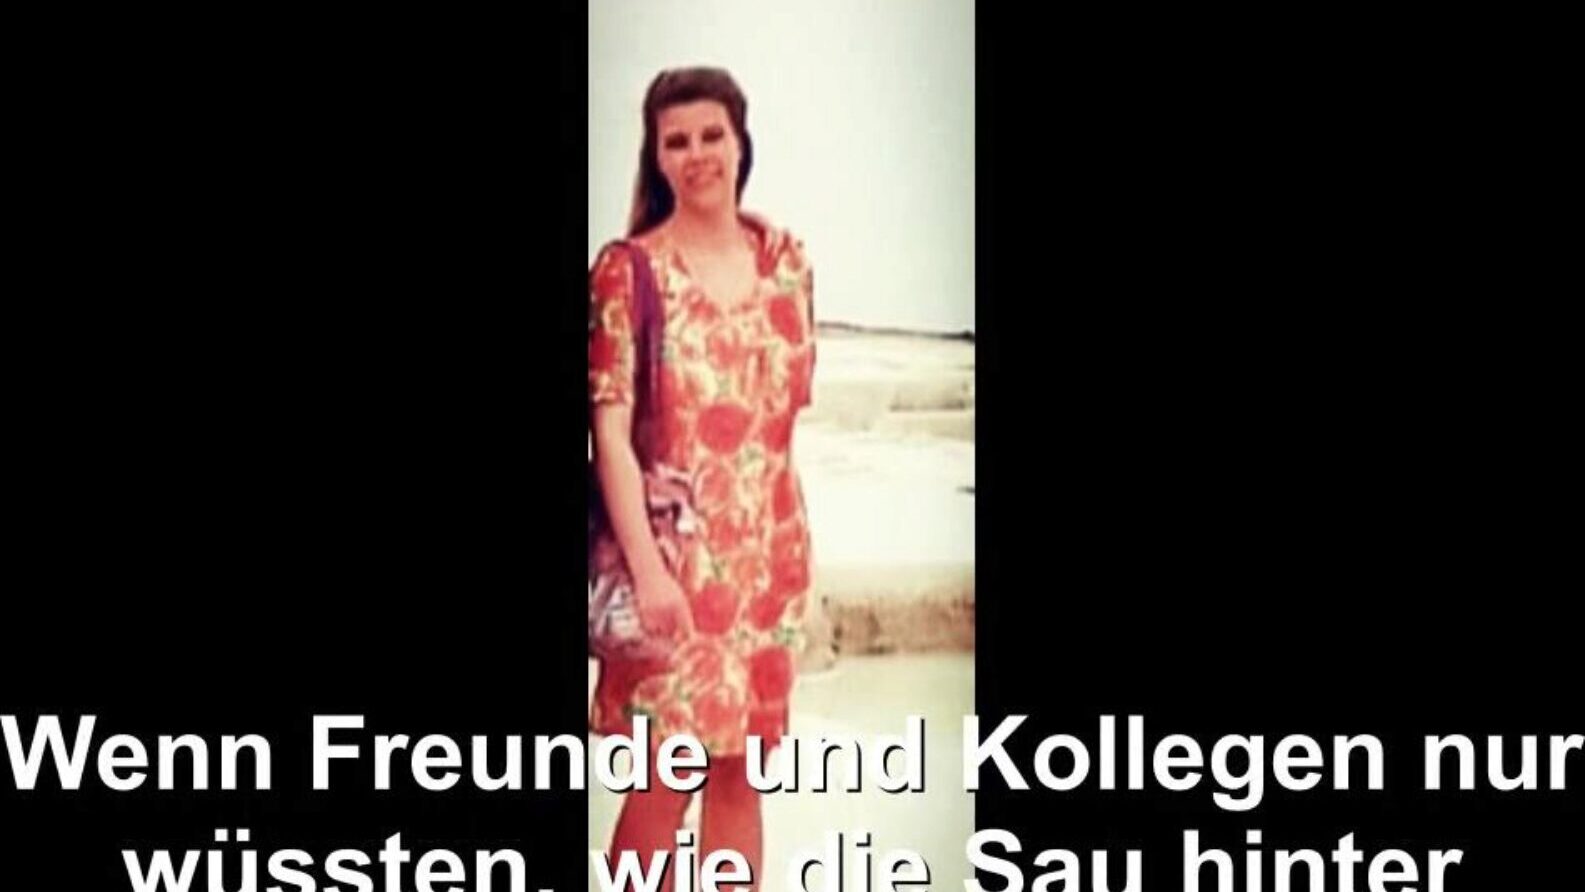 tyska hemmafru utsatta, gratis röret tyska hd porr bd titta tyska hemmafru exponerade film scen på xhamster, den största hd älskling röret webbplats med massor av gratis-för-alla röret tyska tyska fru & hemlagad porrfilm scener